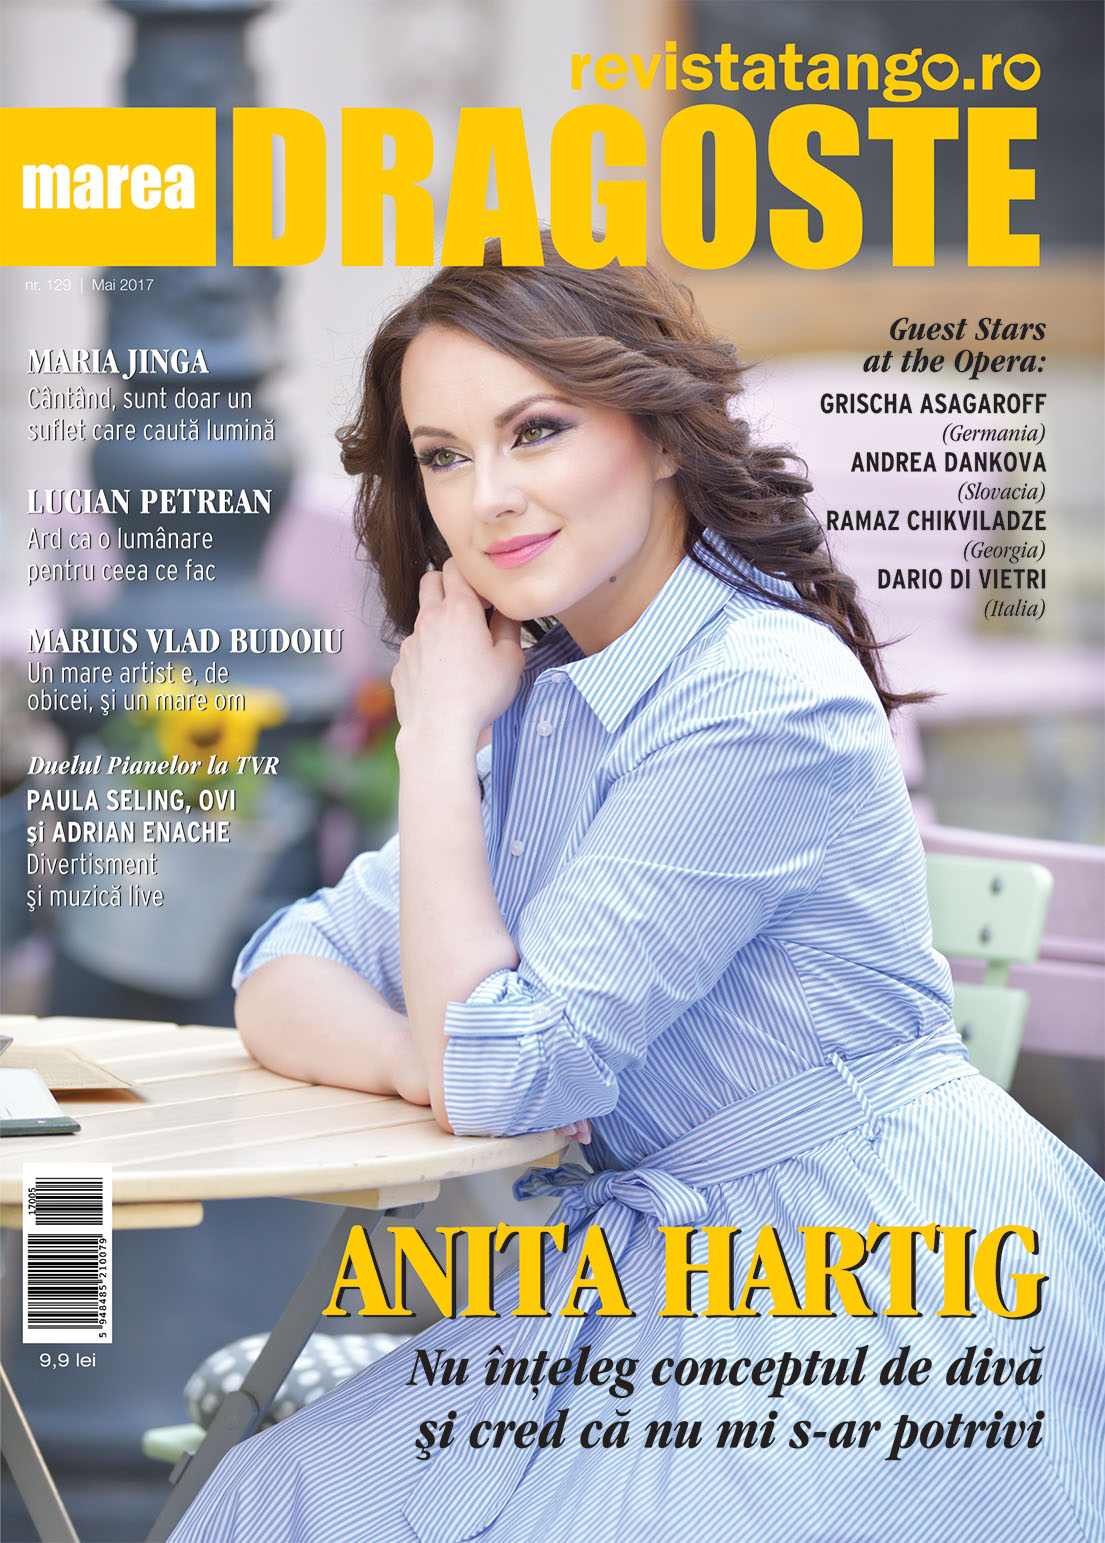 Anita Hartig pe coperta Marea Dragoste-revistatango.ro, nr. 129, mai 2017